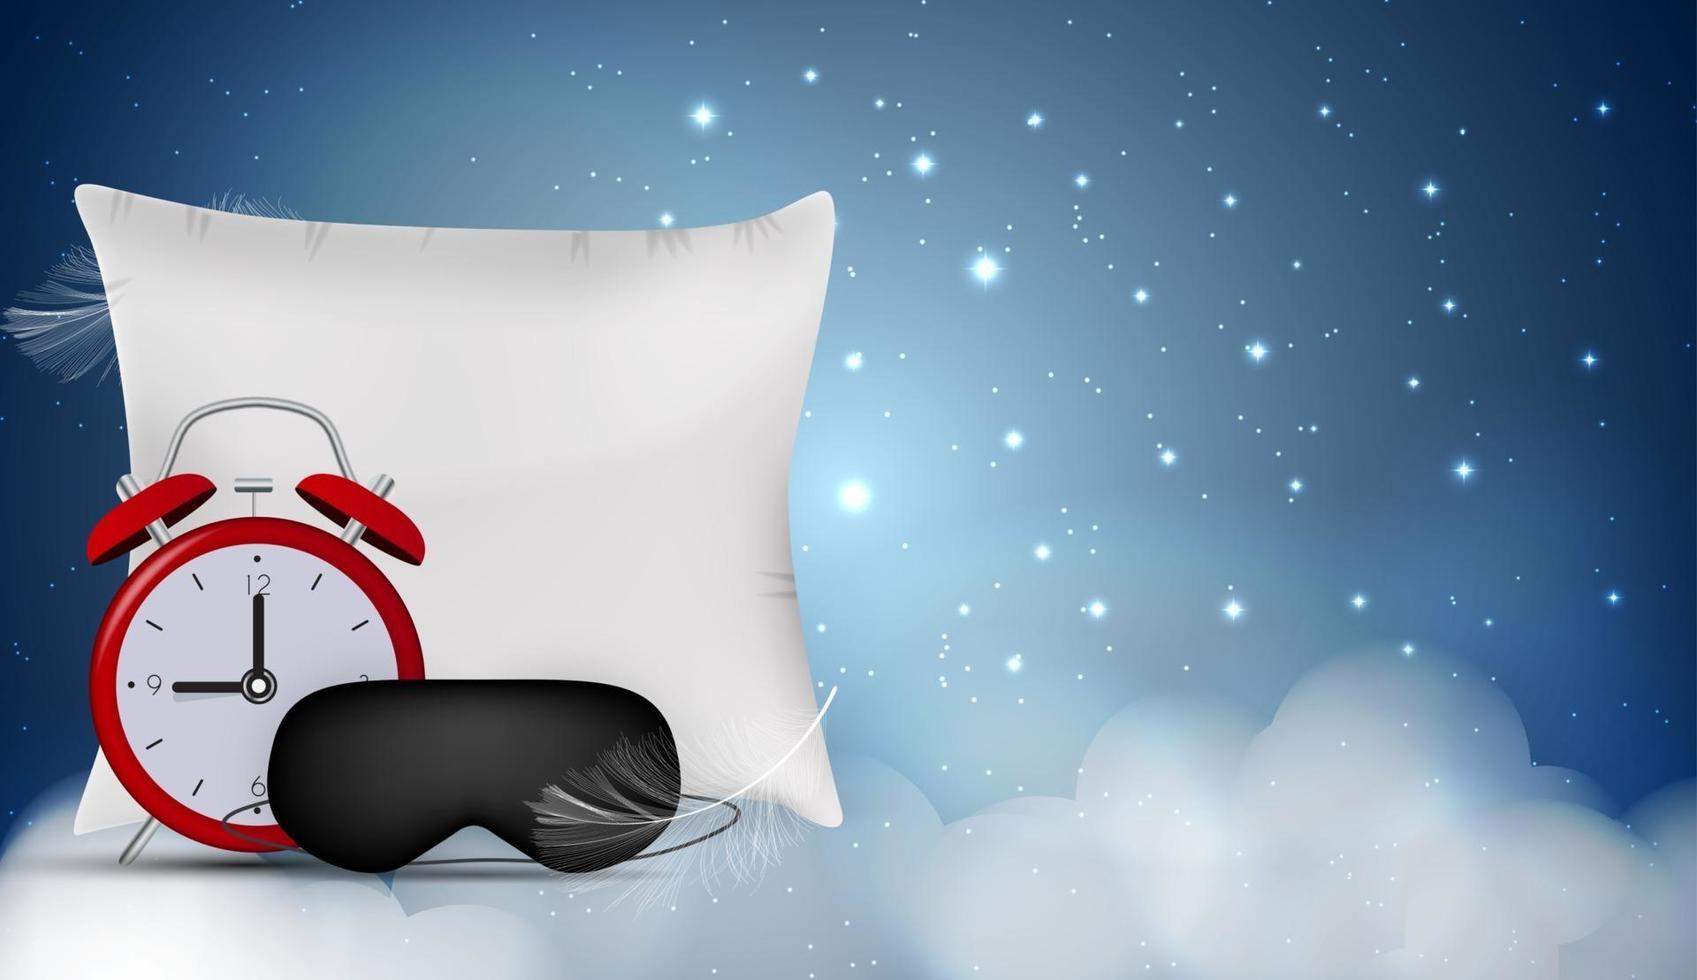 Gute Nacht abstrakter Hintergrund mit lustiger Schlafmaske, Wecker und Kissen. Vektor-Illustration vektor